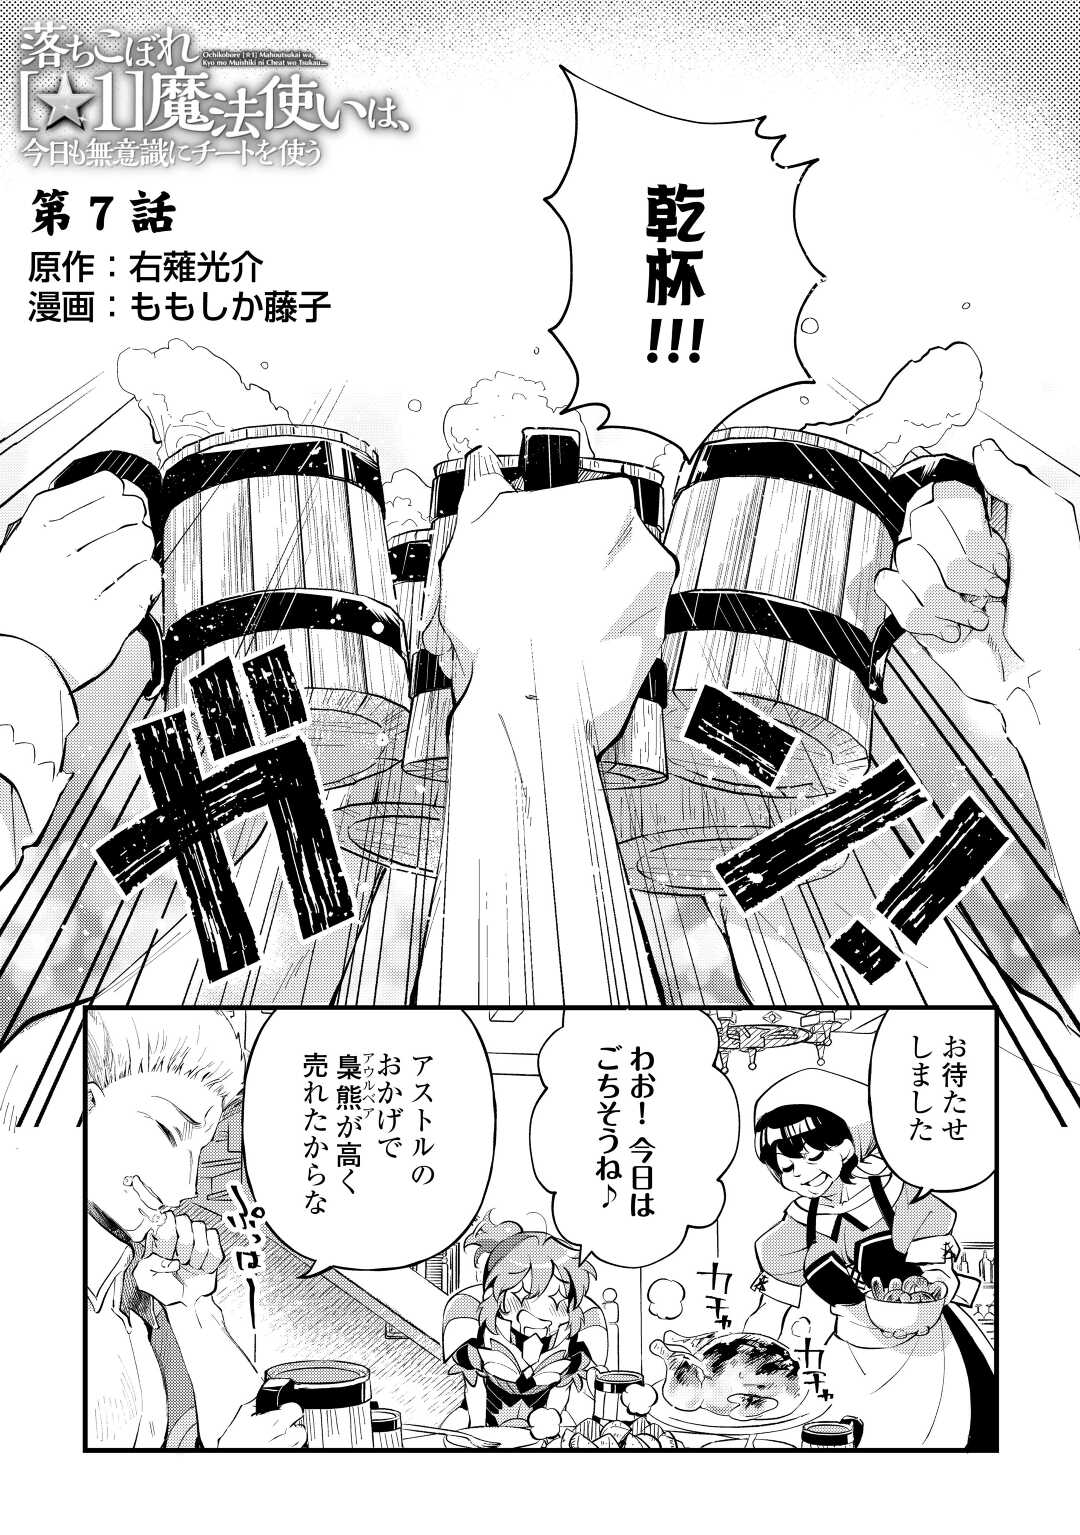 Ochikobore 1 Mahou Tsukai wa, Kyou mo Muishiki ni Cheat o Tsukau - Chapter 7 - Page 1